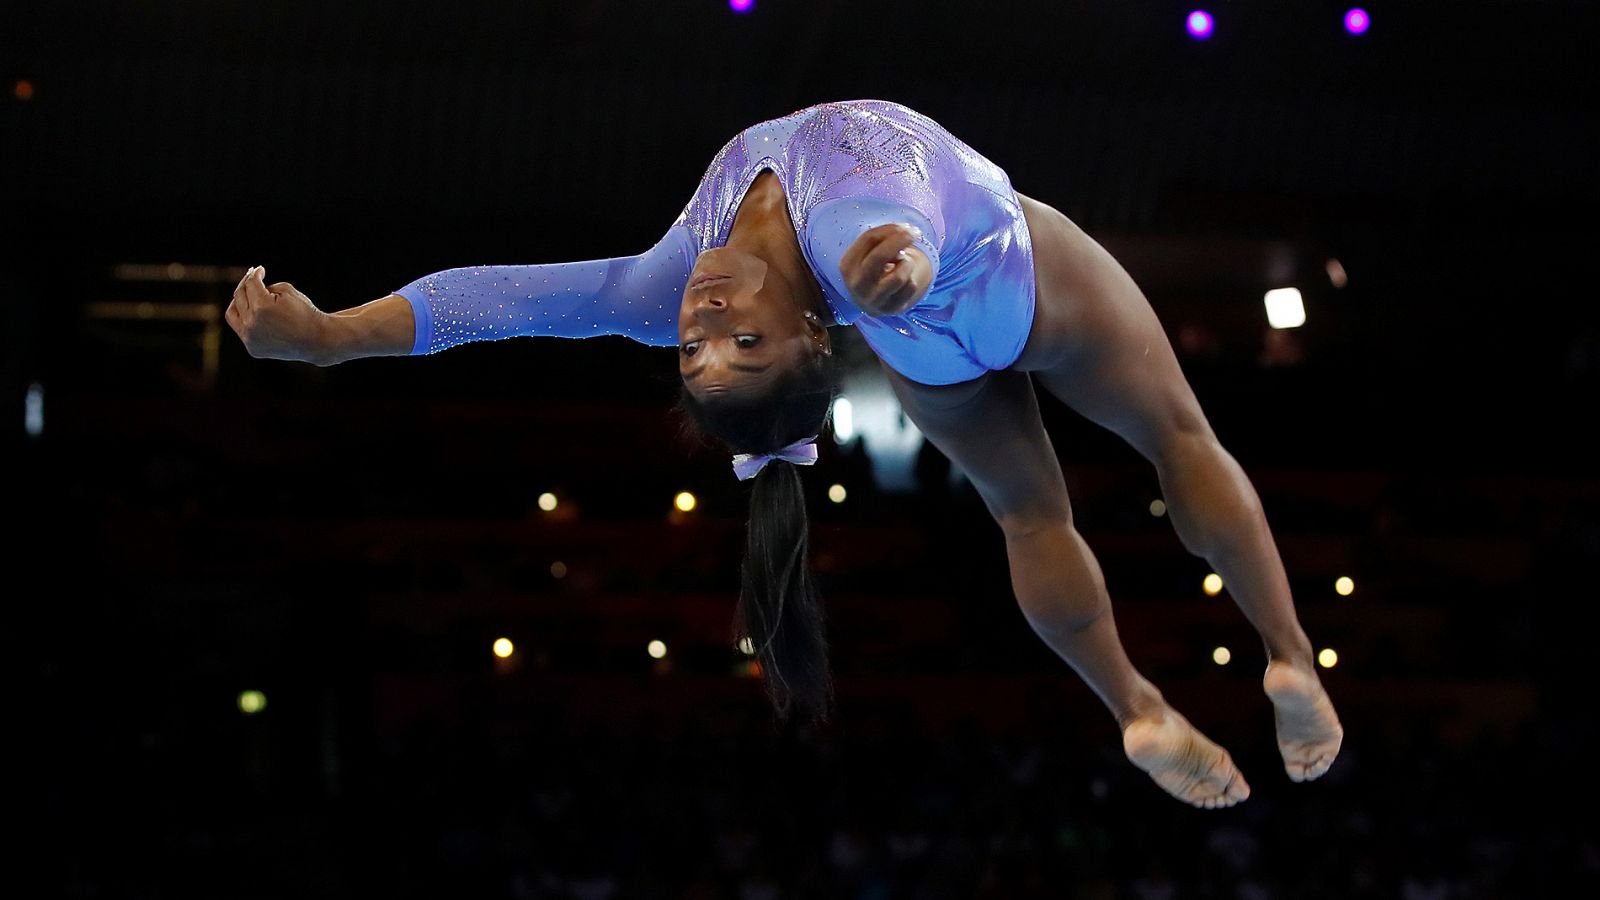 Mundial de gimnasia | Biles, oro en su ejercicio en la final de suelo - rtve.es